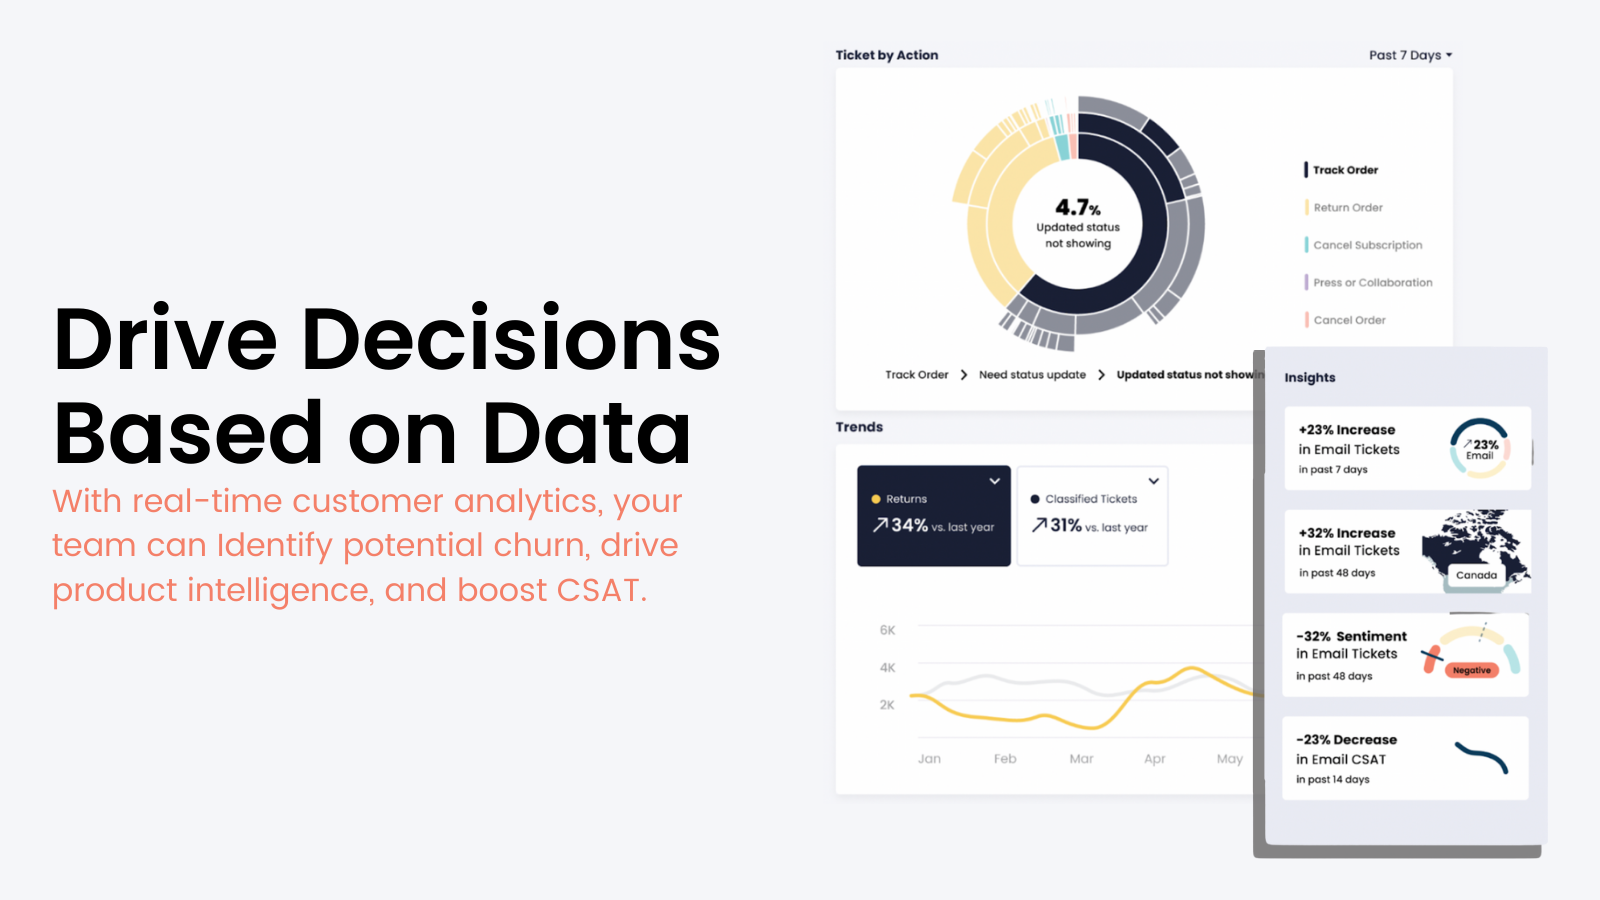 Data-gedreven beslissingen